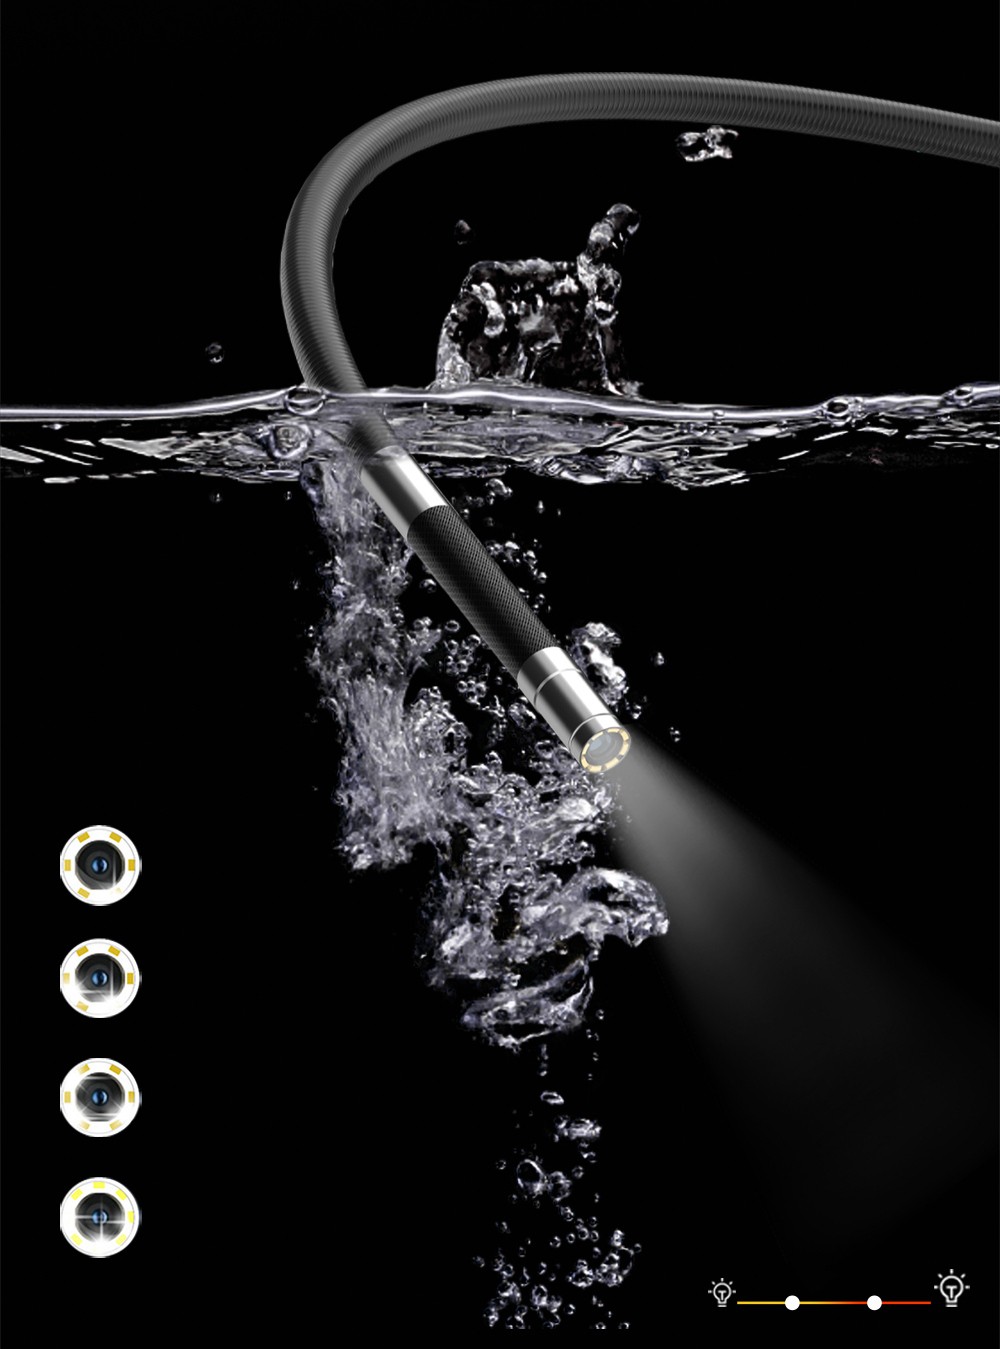 водонепроницаемая линза бороскопа - камера для осмотра эндоскопа